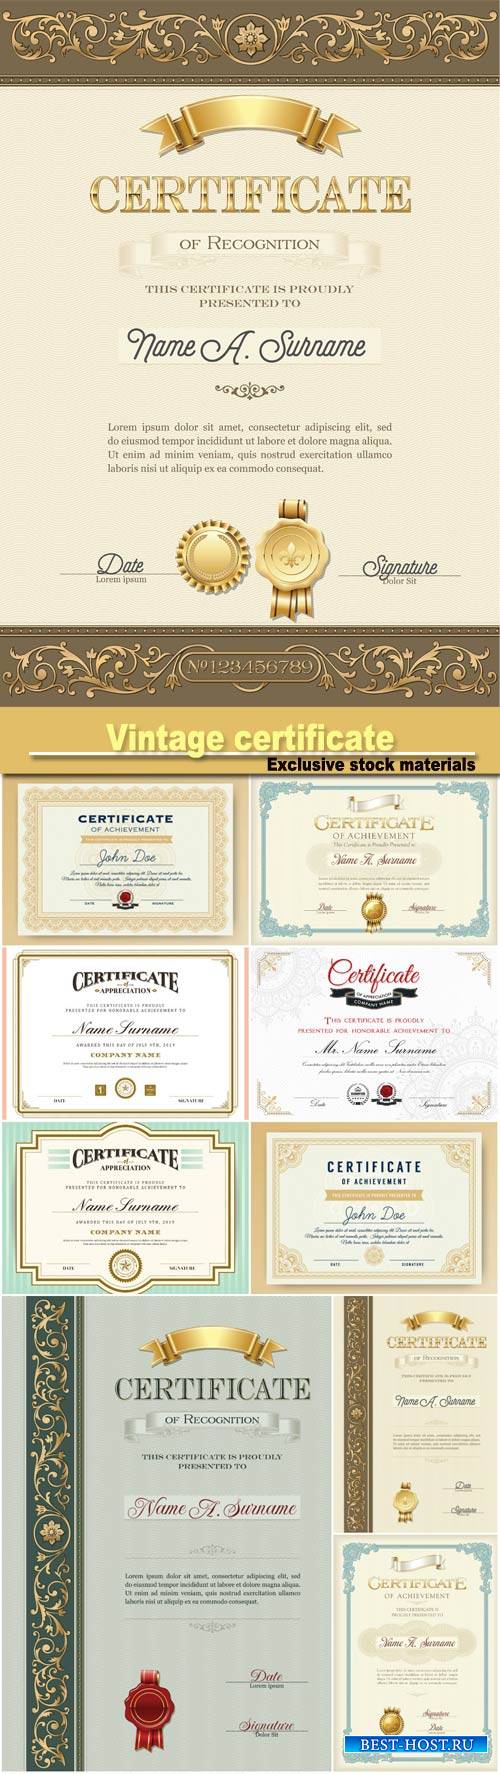 Vintage certificate of recognition portrait biege